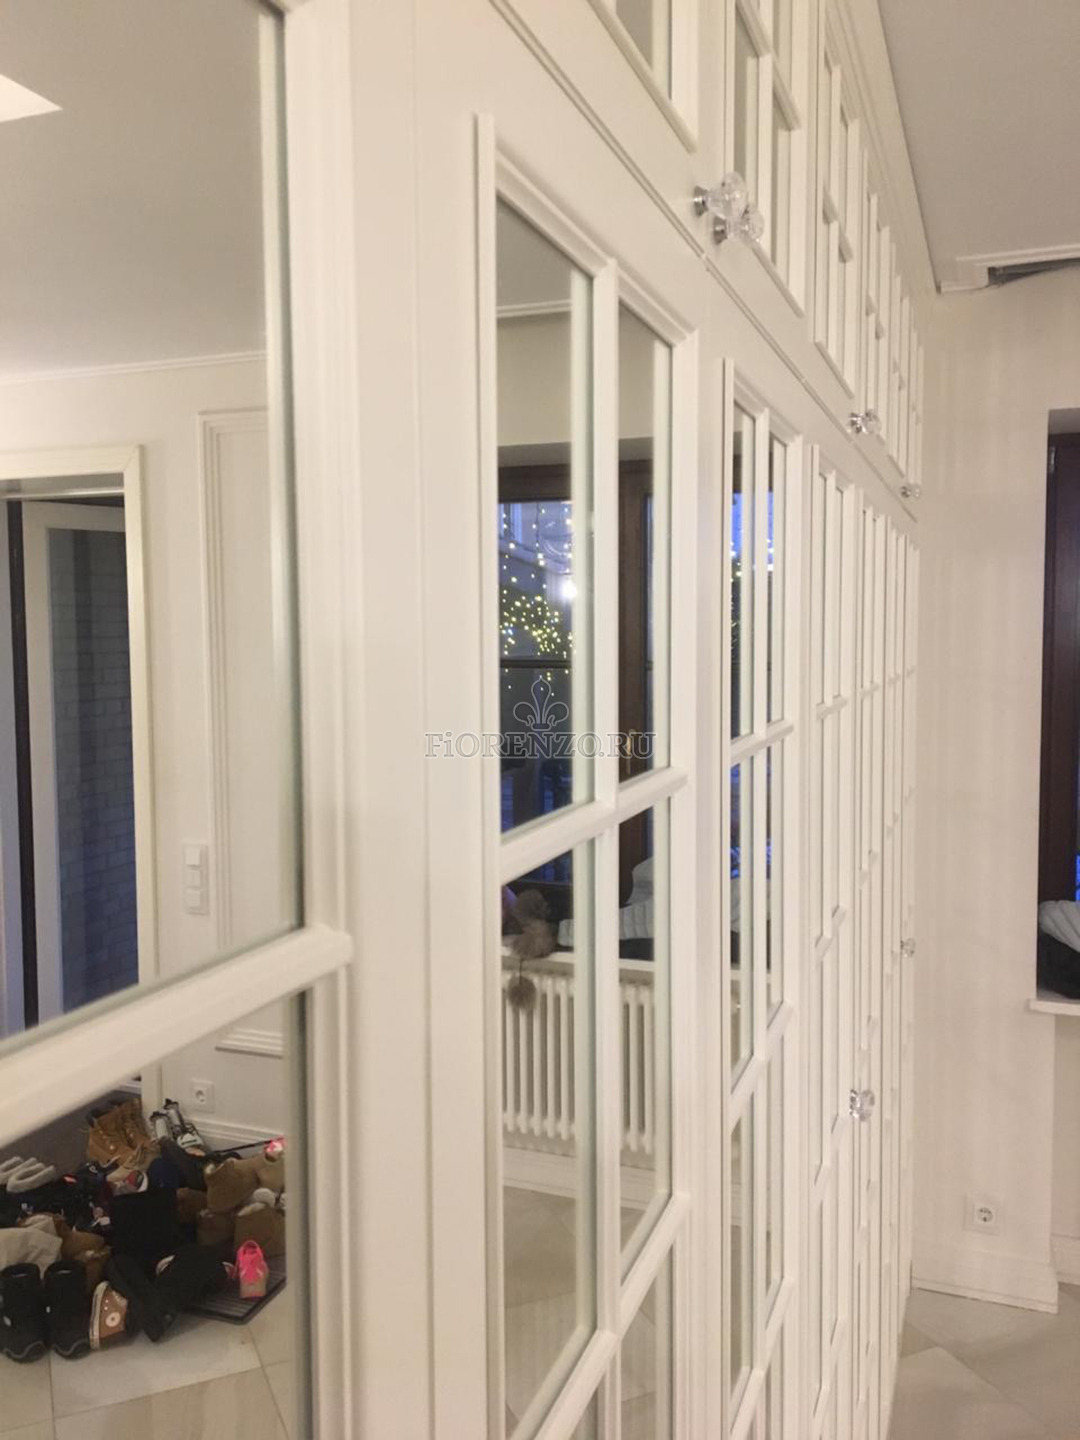 Зеркальные фасады шкафа